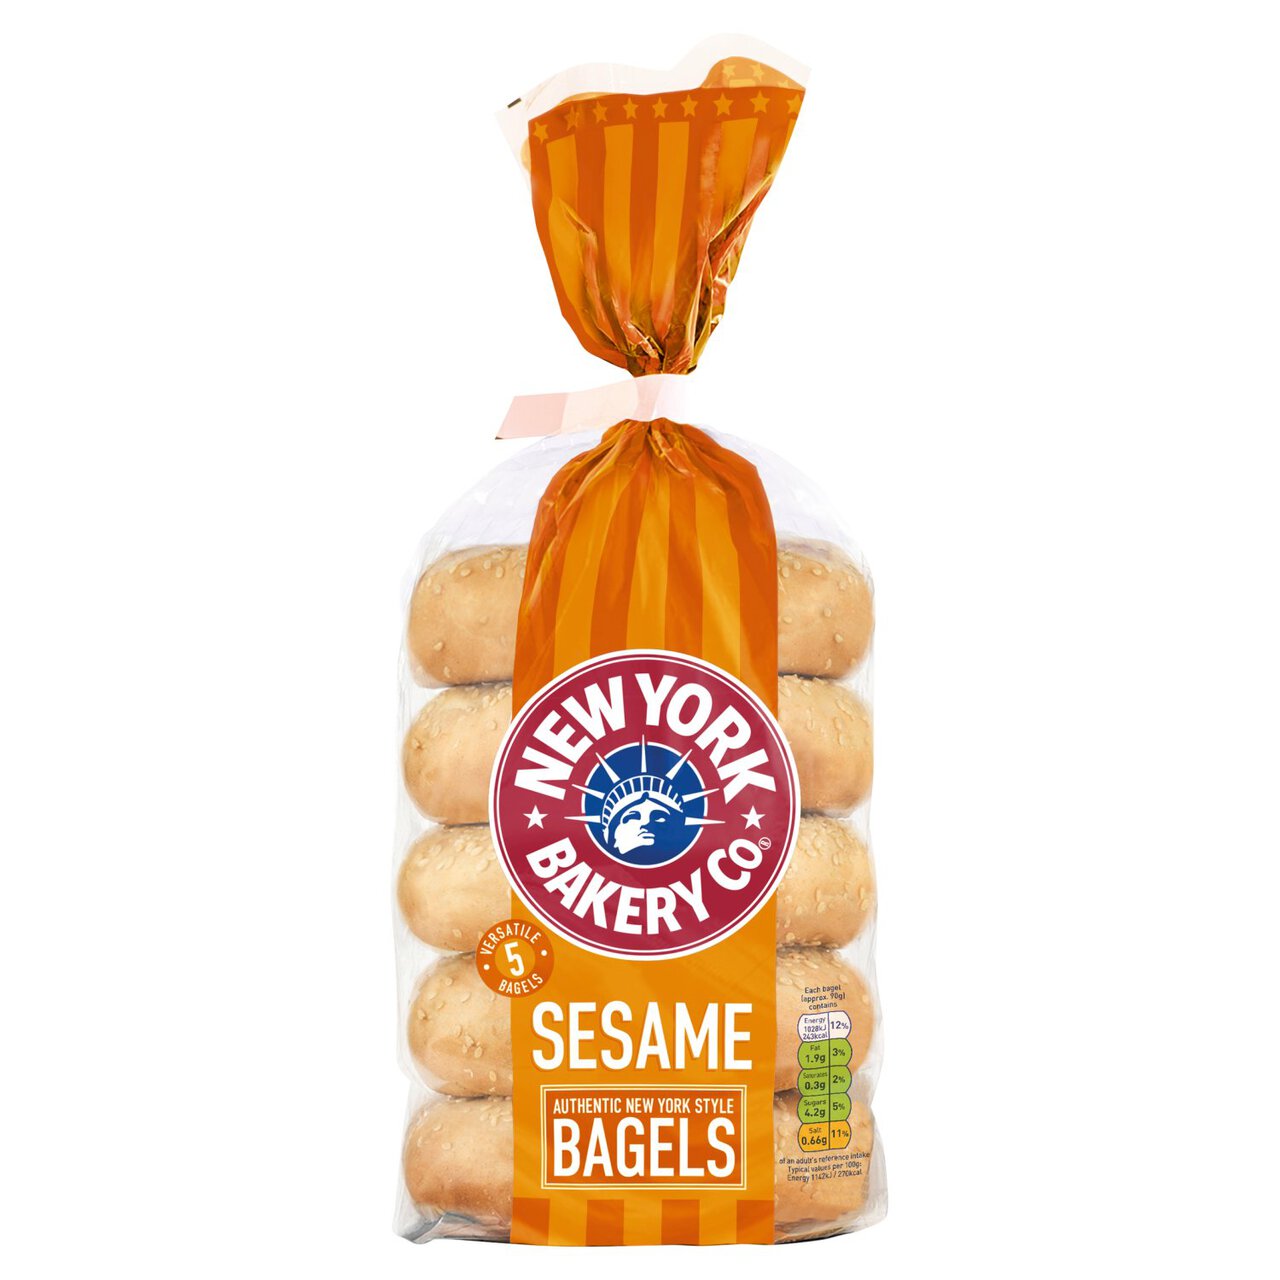 New York Bakery Co. Sesame Bagel 5 per pack